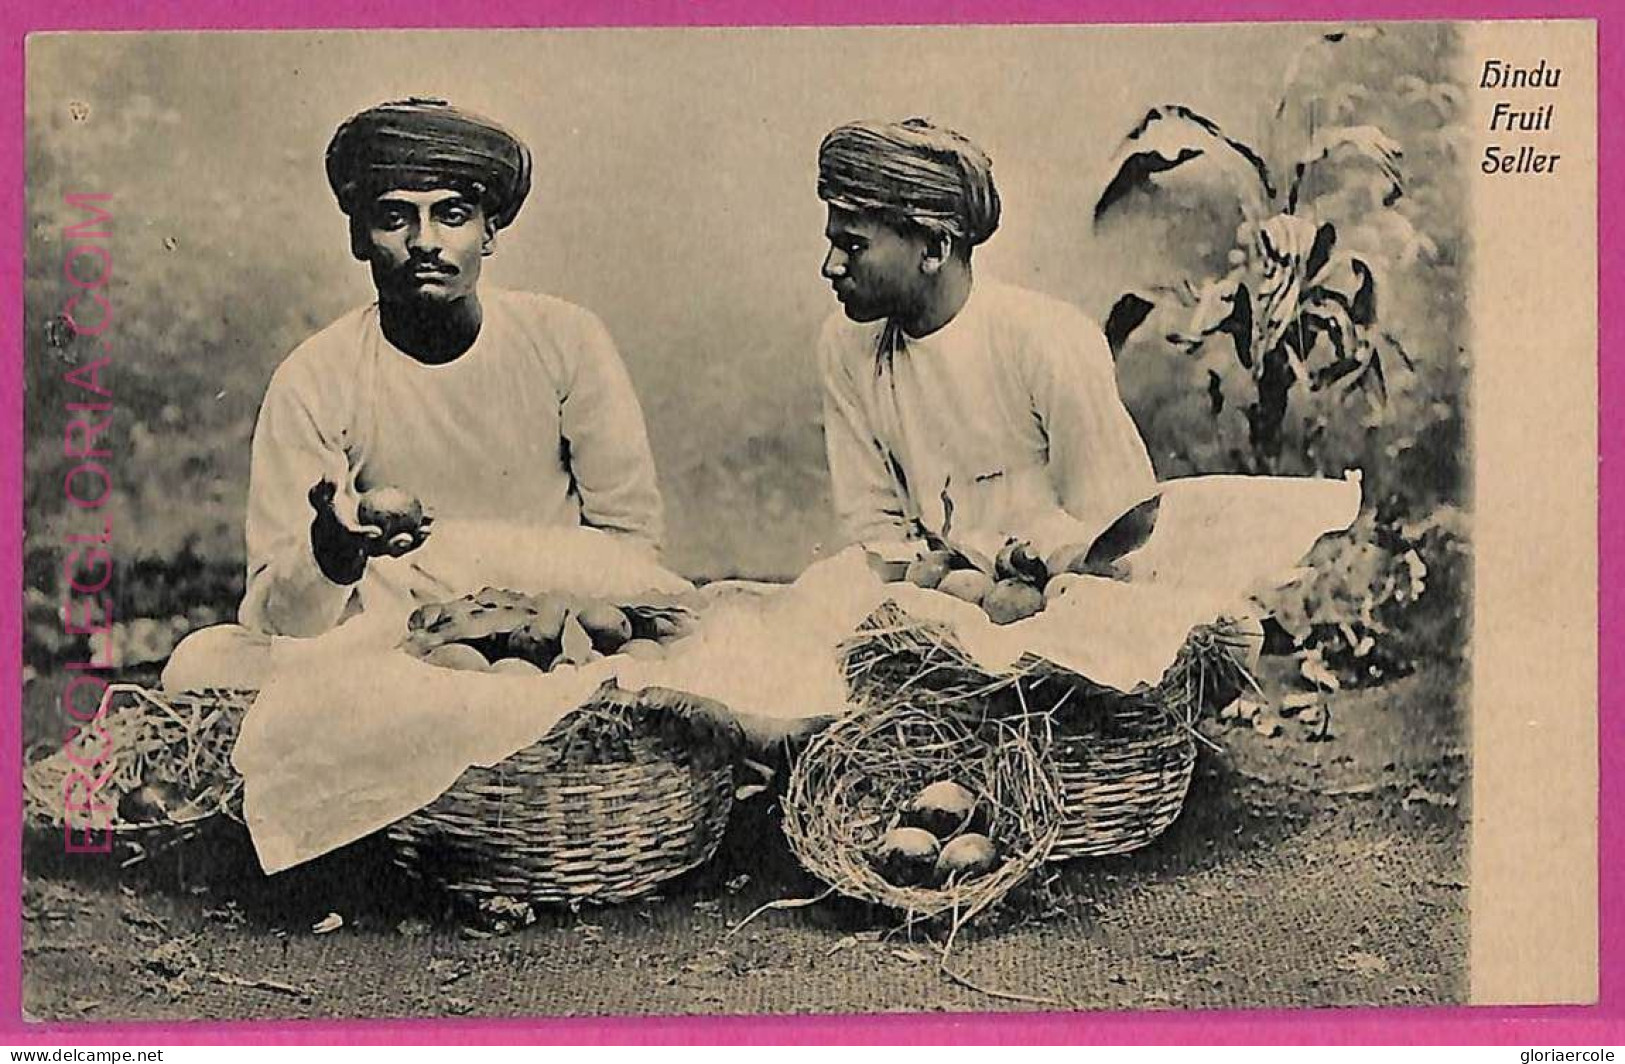 Ag3778  - INDIA - VINTAGE POSTCARD  - Gindu Fruit Seller, Ethnic - Inde